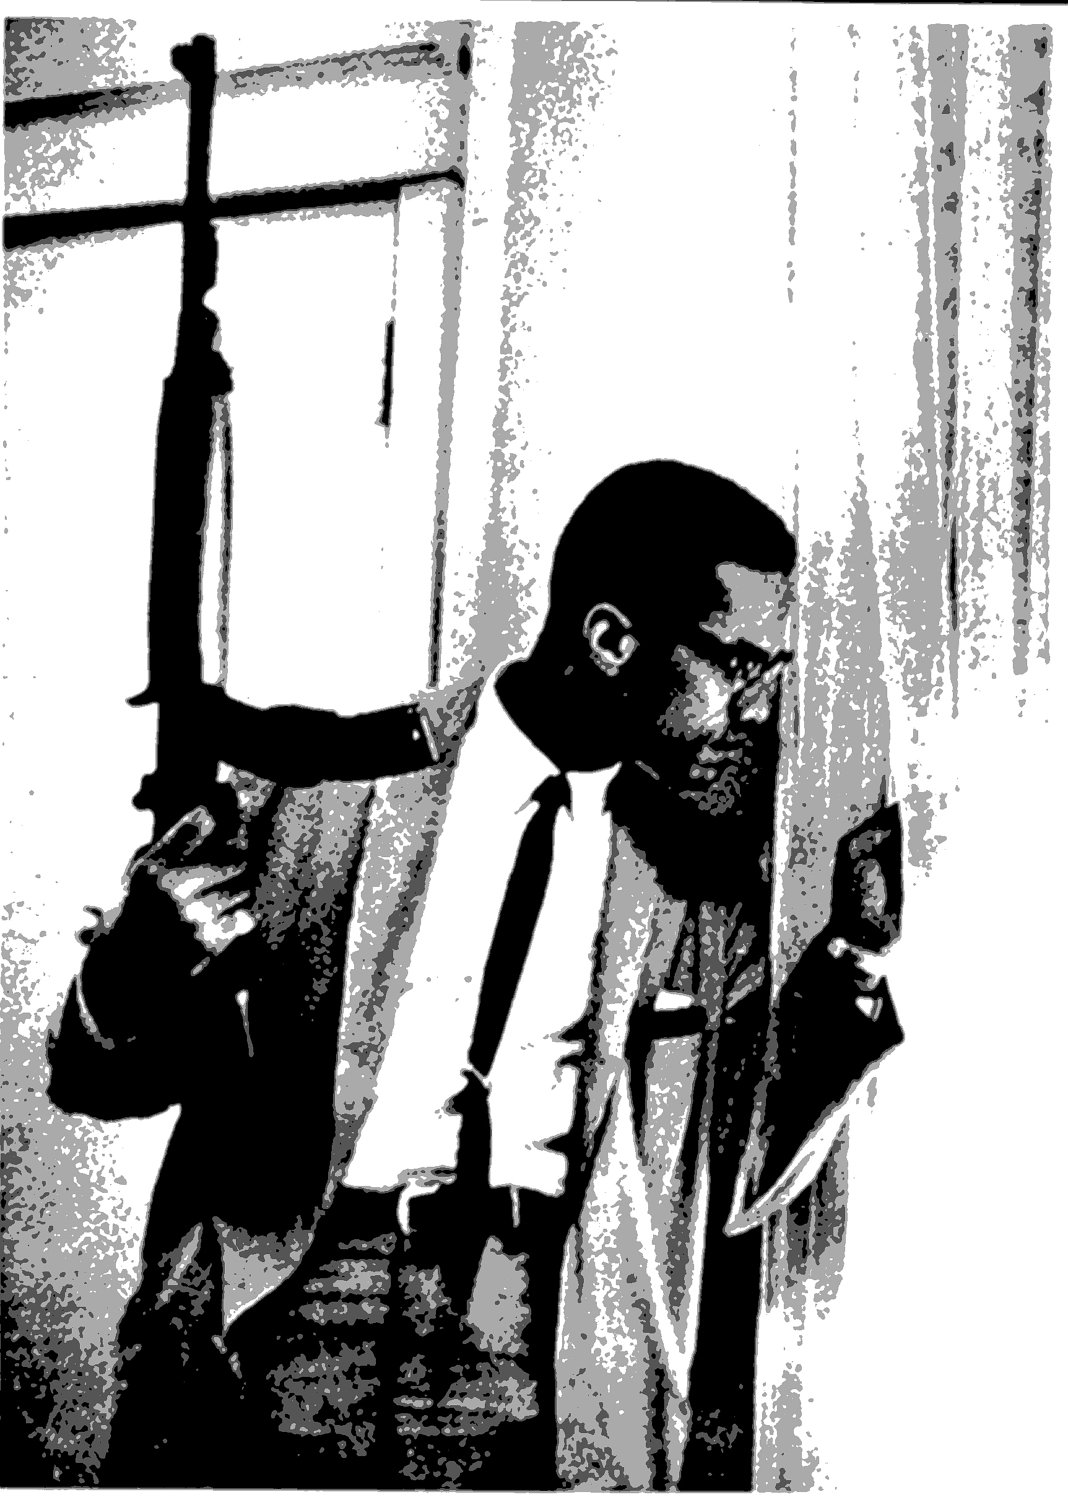 Malcolm X Wallpaper - WallpaperSafari